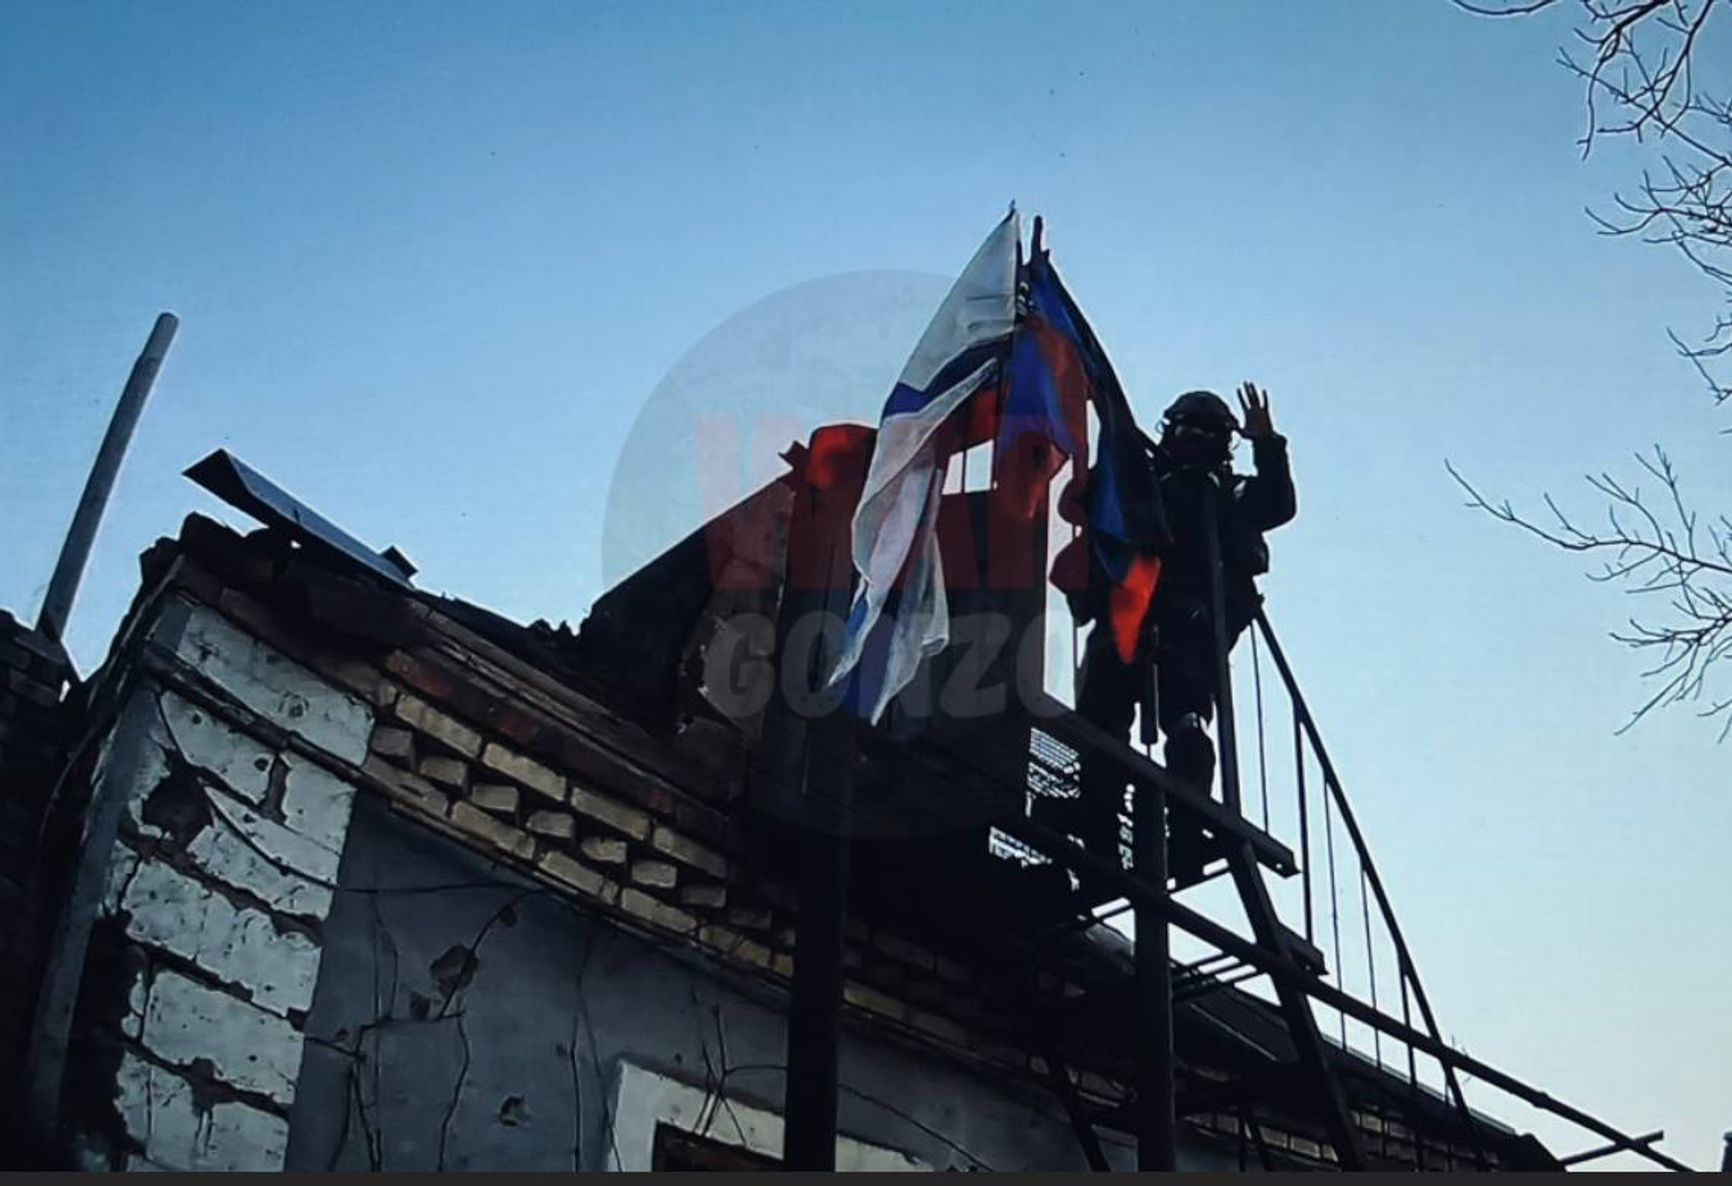 Сообщения об украинской разведке в Херсоне, флаг России в Павловке Донецкой области. Что происходит на линии фронта